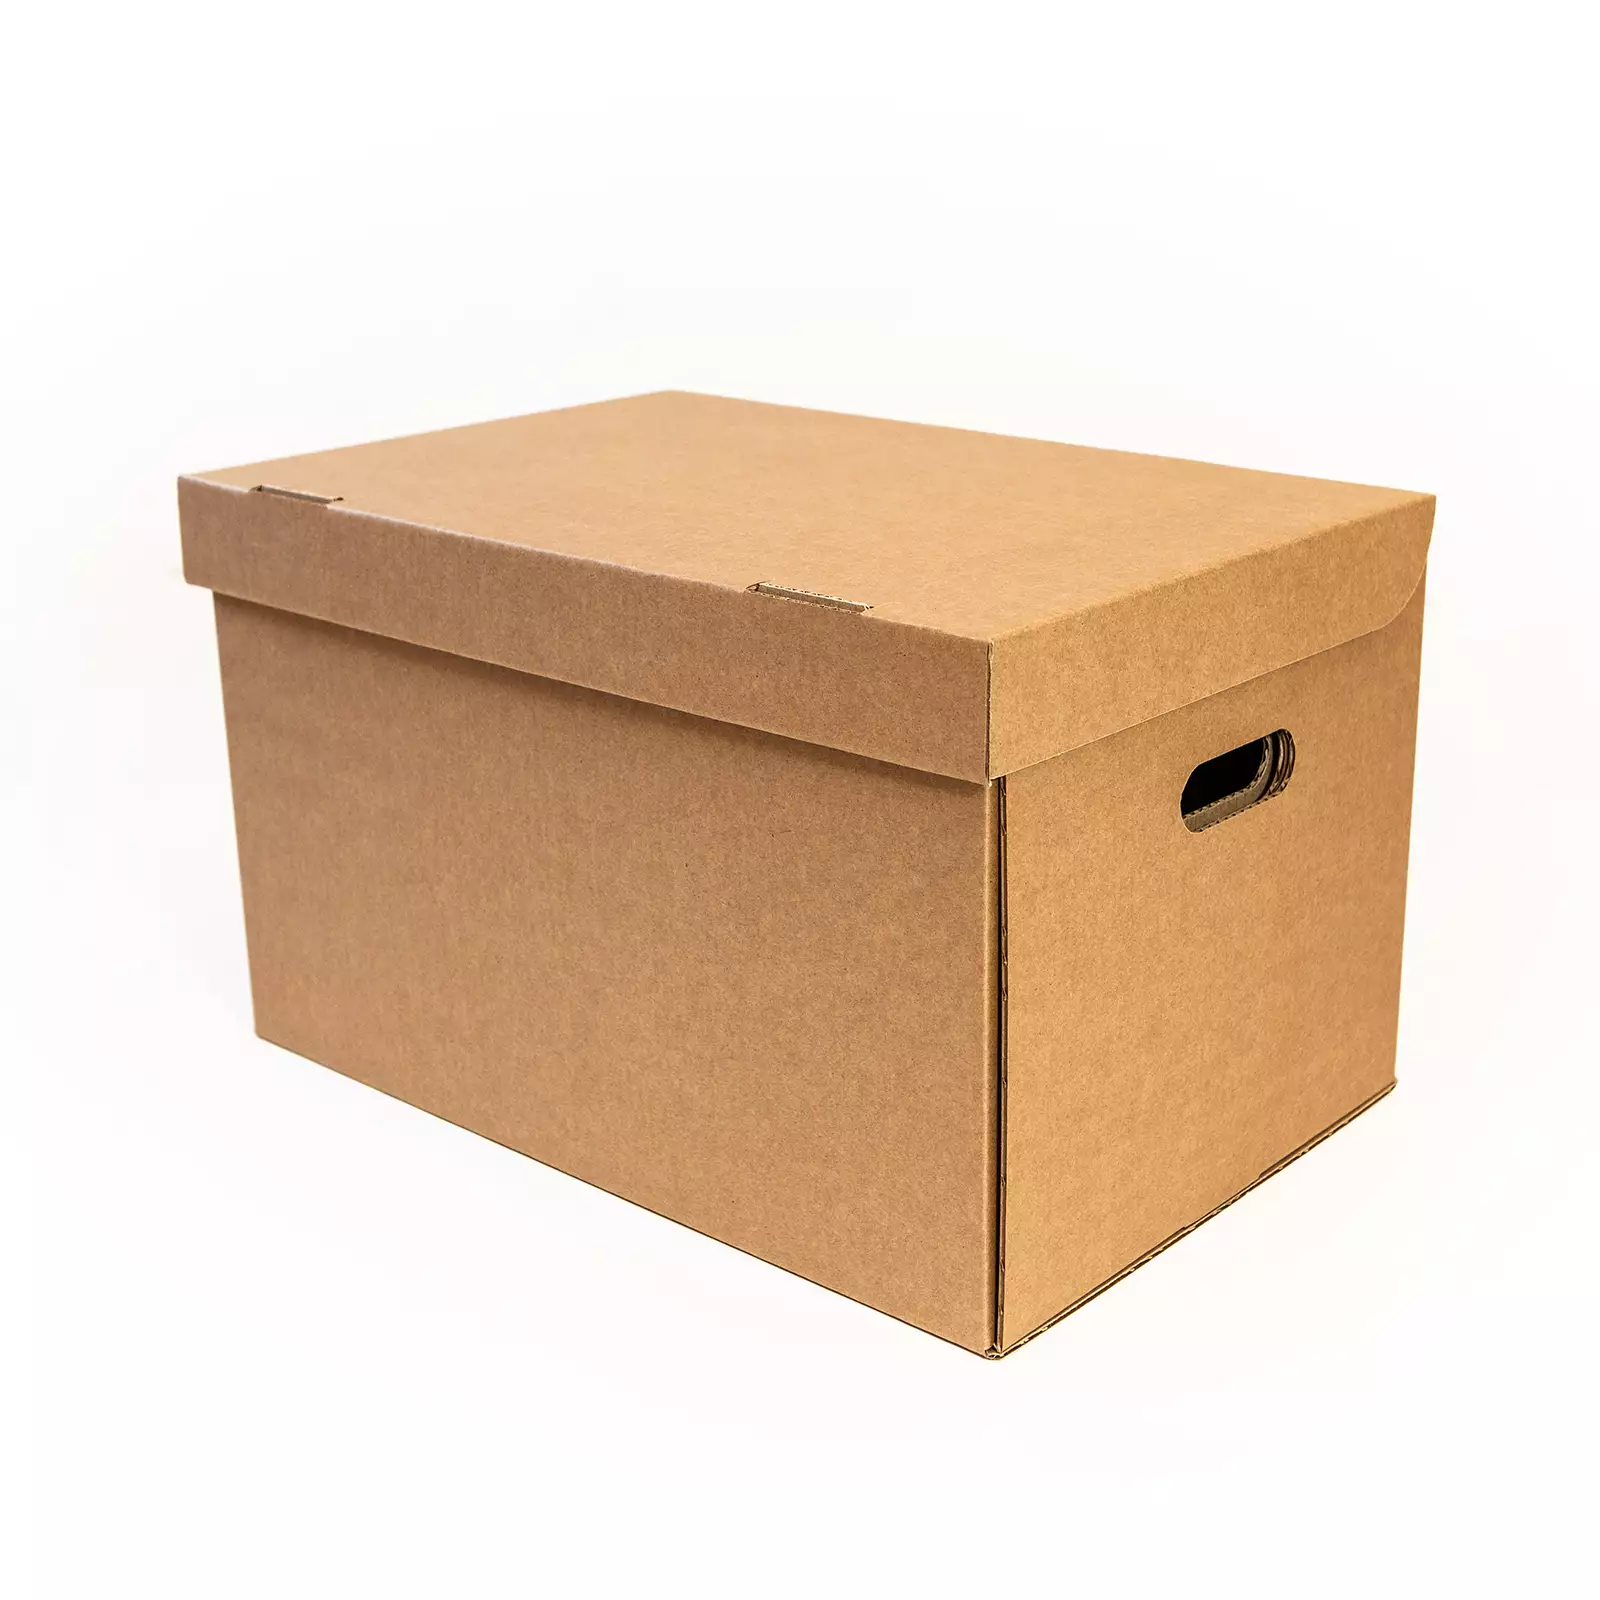 Archive boxes – Kapparus